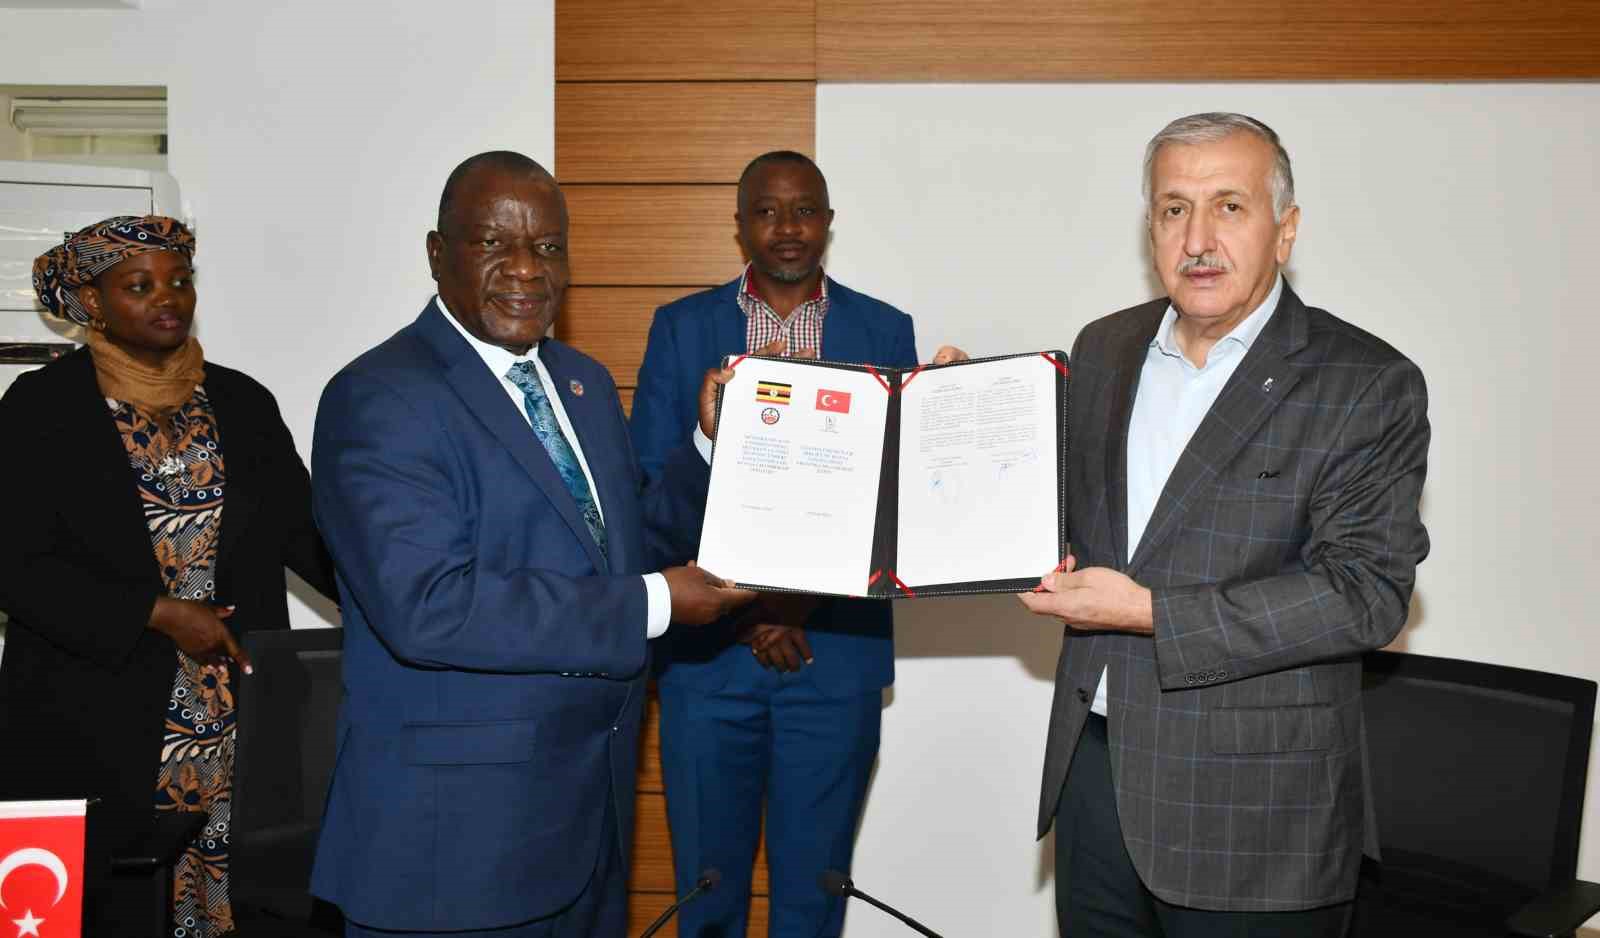 KSO ve Uganda arasında İyi Niyet Mutabakat Zaptı imzalandı